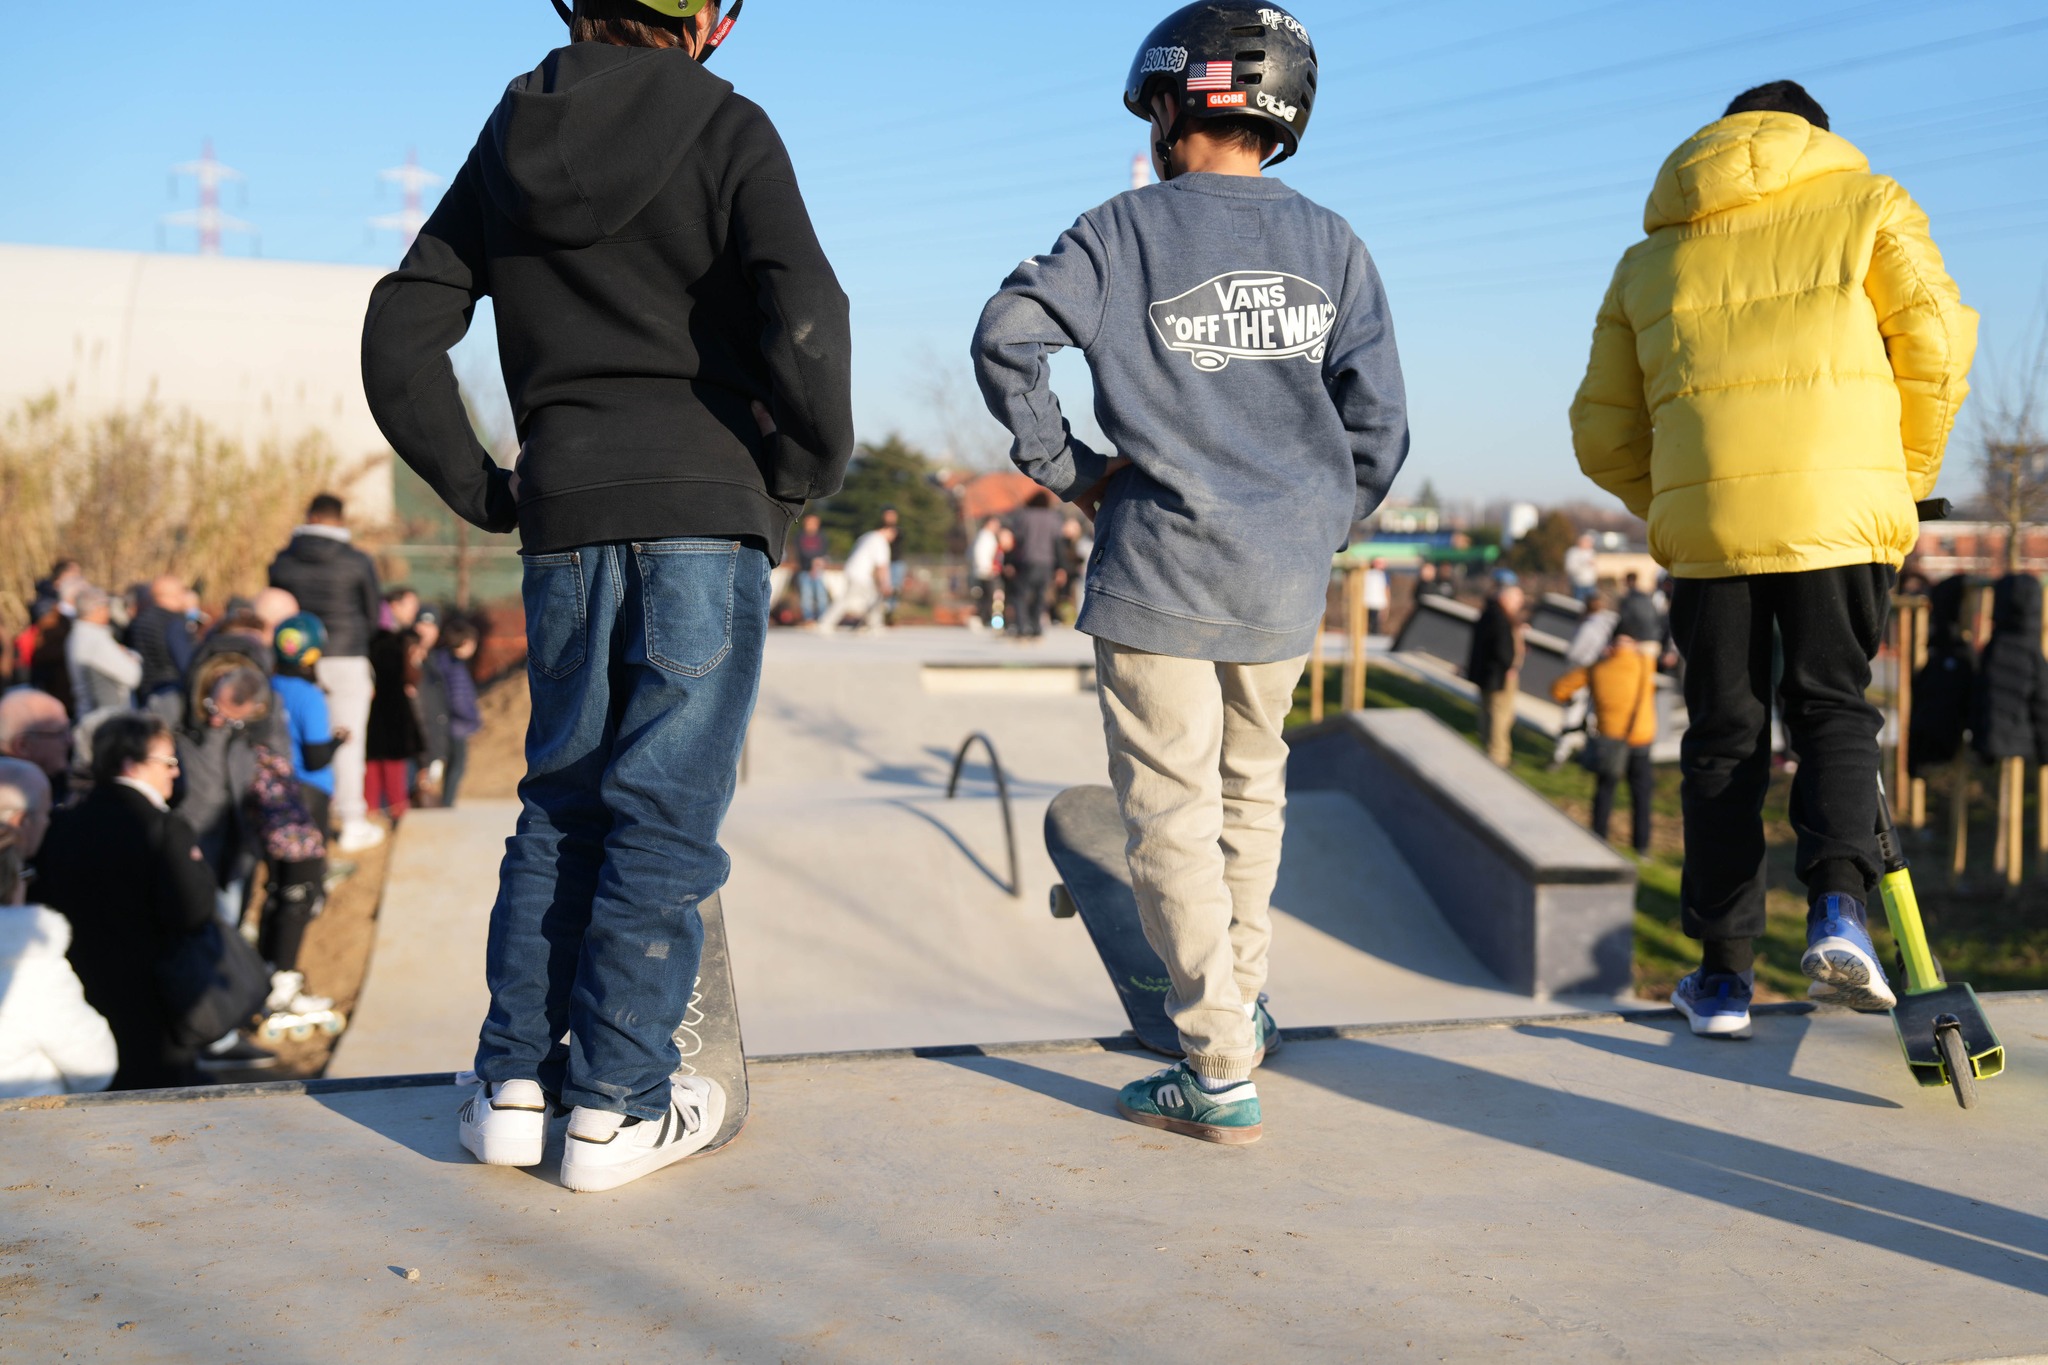 Inaugurazione skatepark: bambini sulla pista in attesa di partire